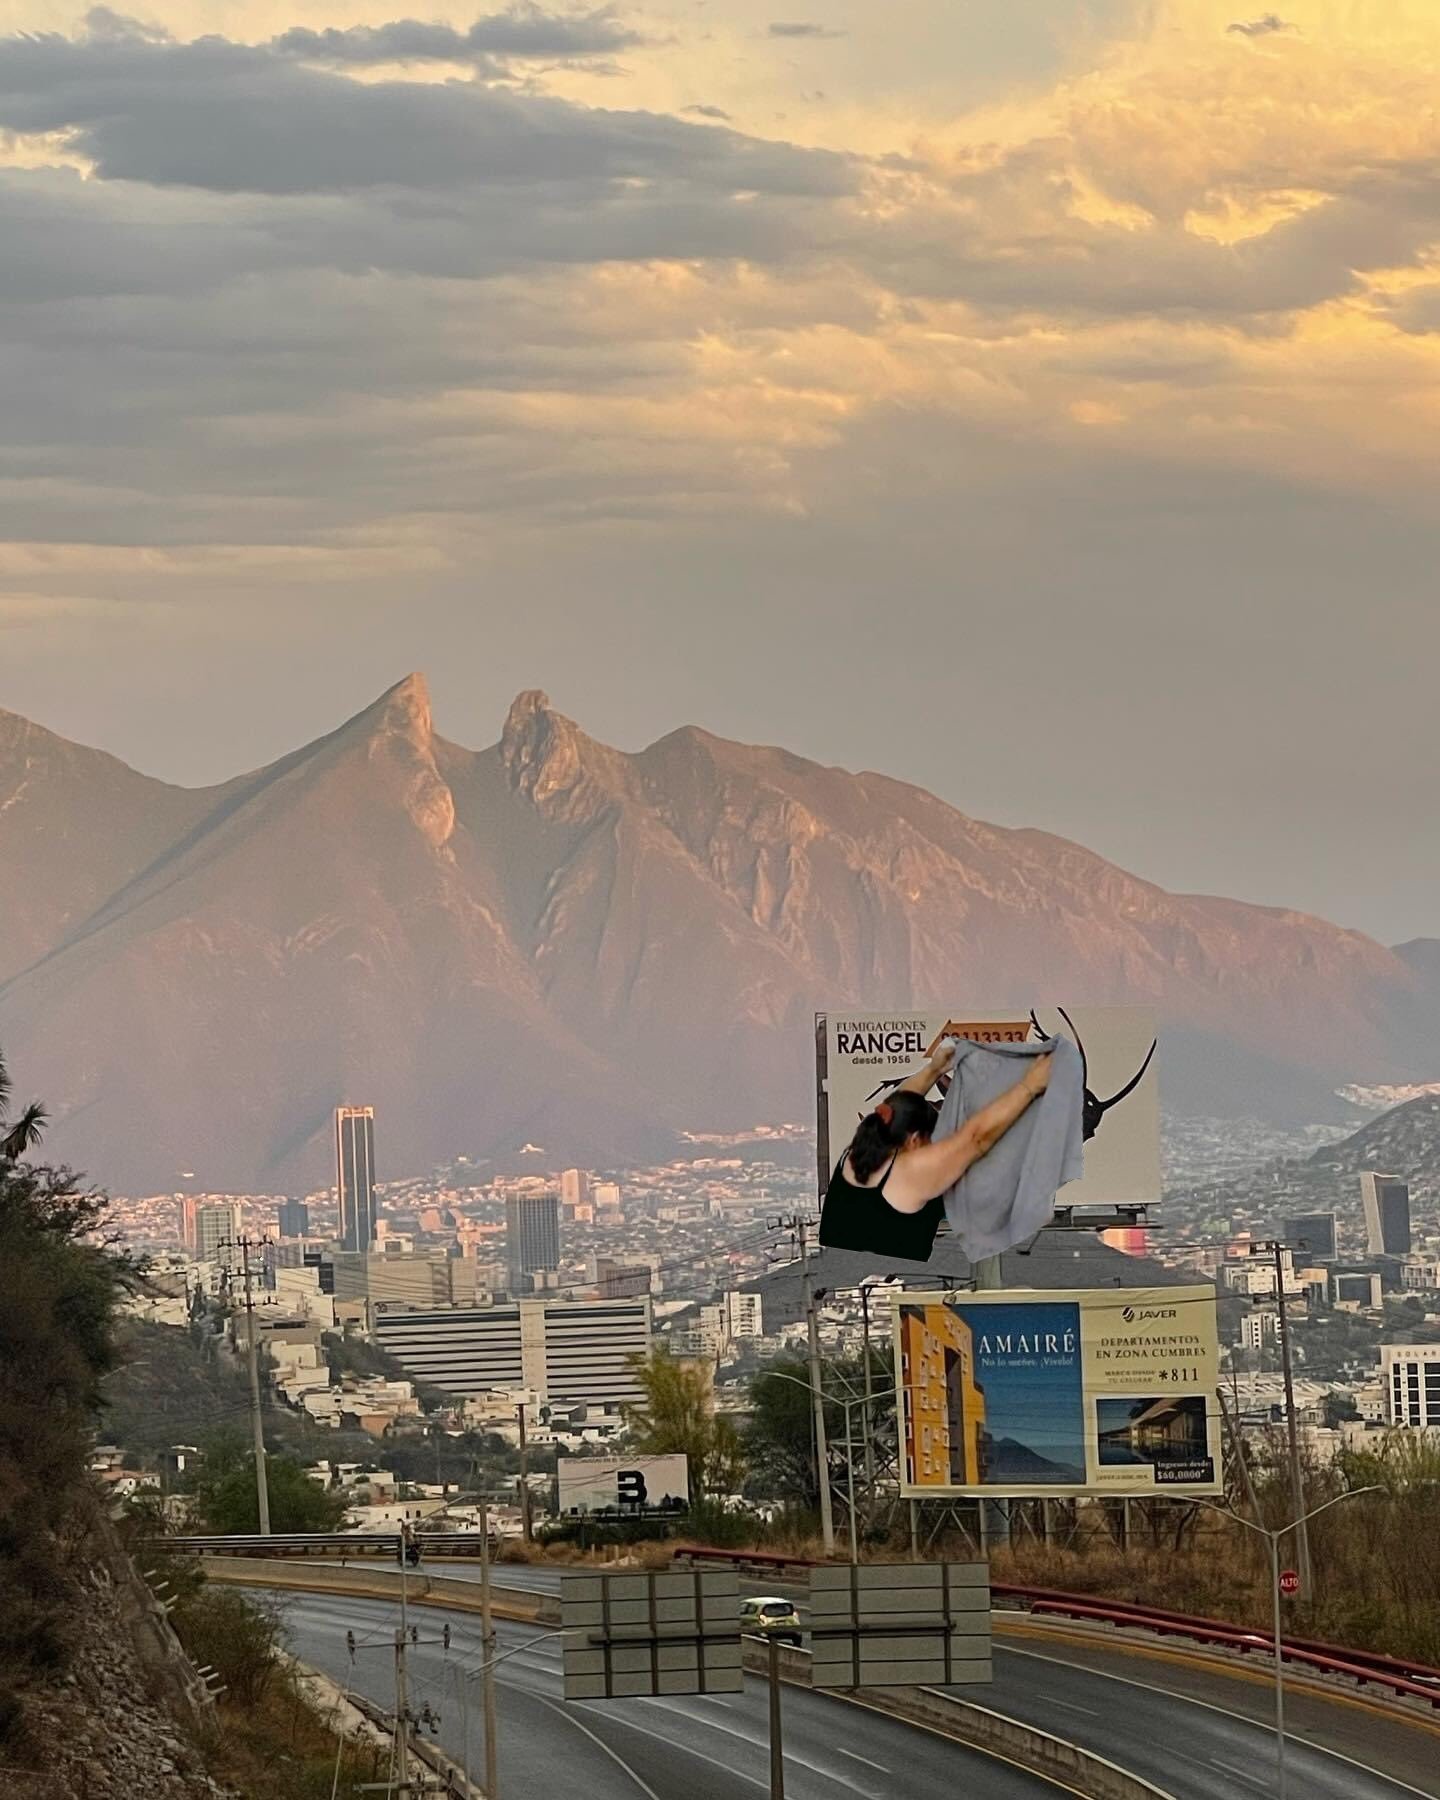 QuePasaEnNL ®️ on Twitter: "Tan bonito el cerro de la silla y nos ponen gigante 🪳 de publicidad 🤦🏻‍♂️ https://t.co/My0tBVbZhO" / Twitter